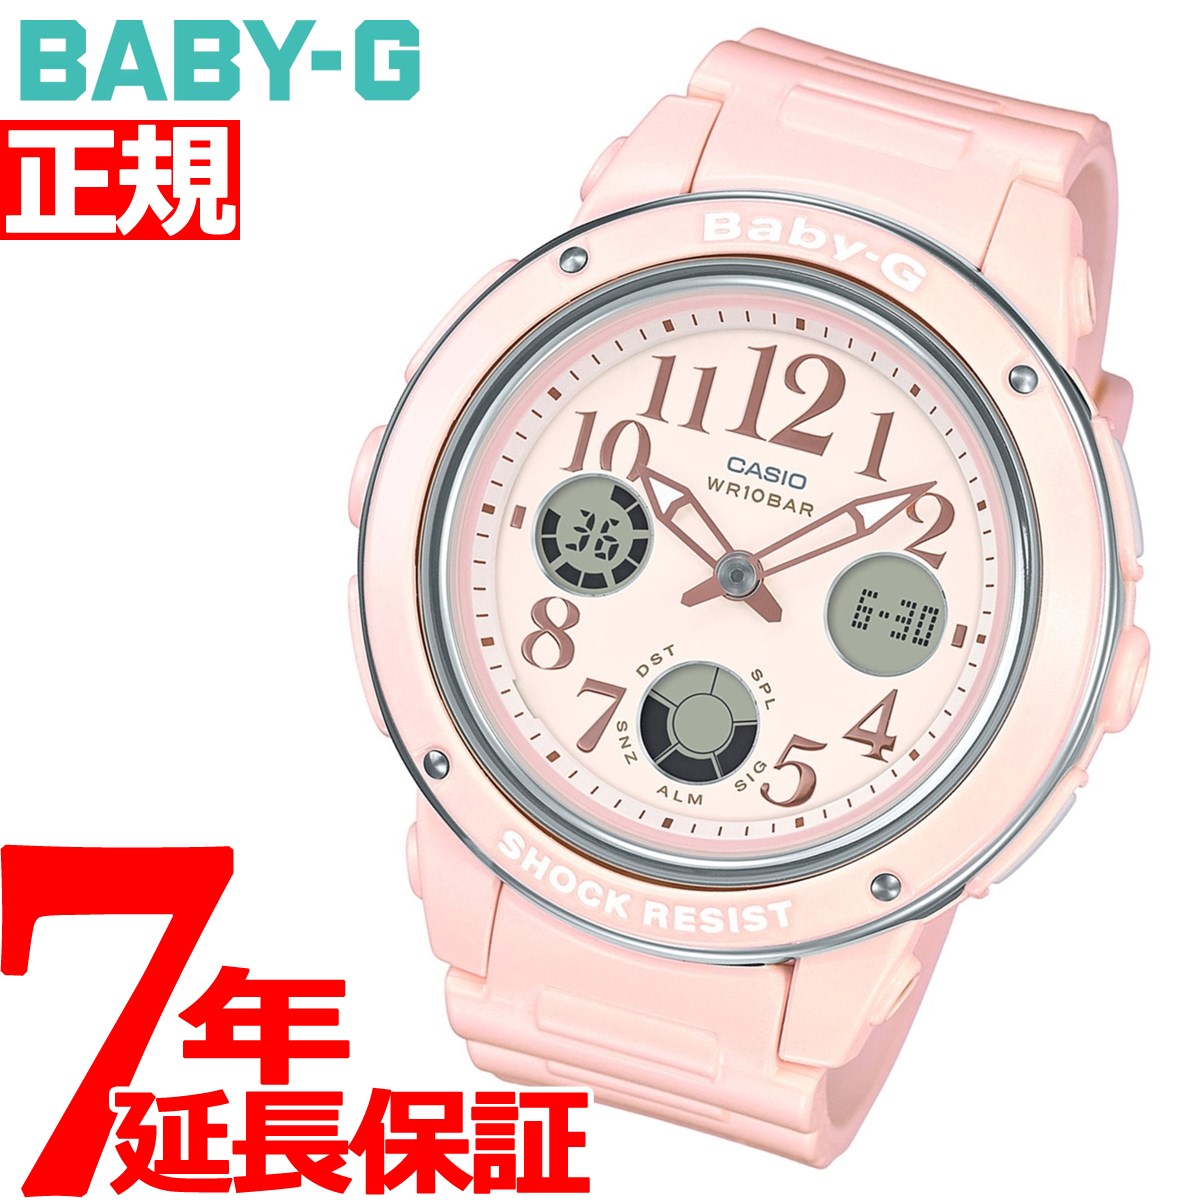 CASIO BABY-G カシオ ベビーG 腕時計 レディース パステル・ピンク